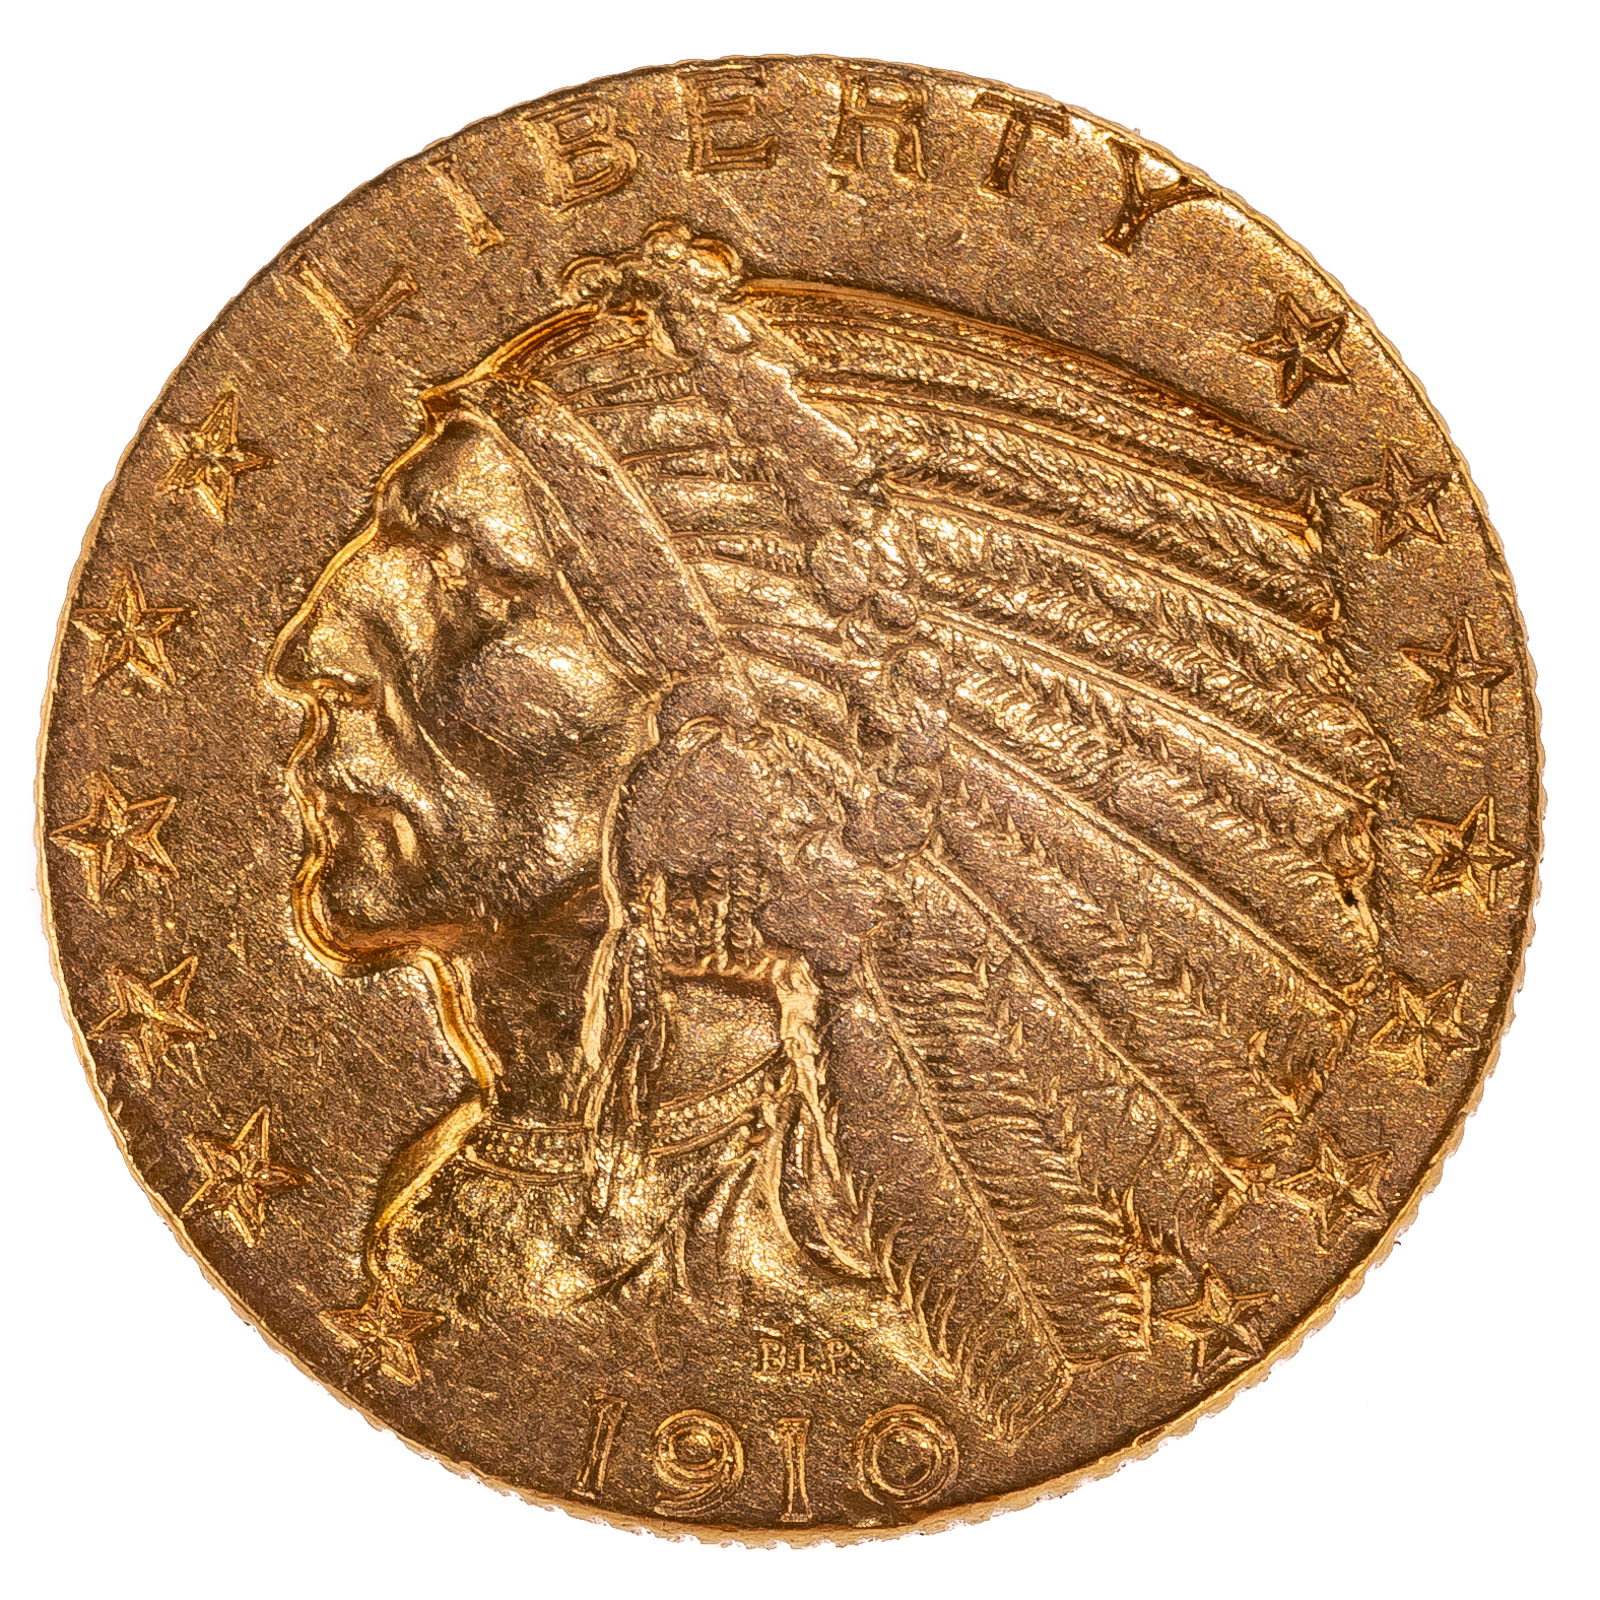 1910-S INDIAN $5 GOLD HALF EAGLE